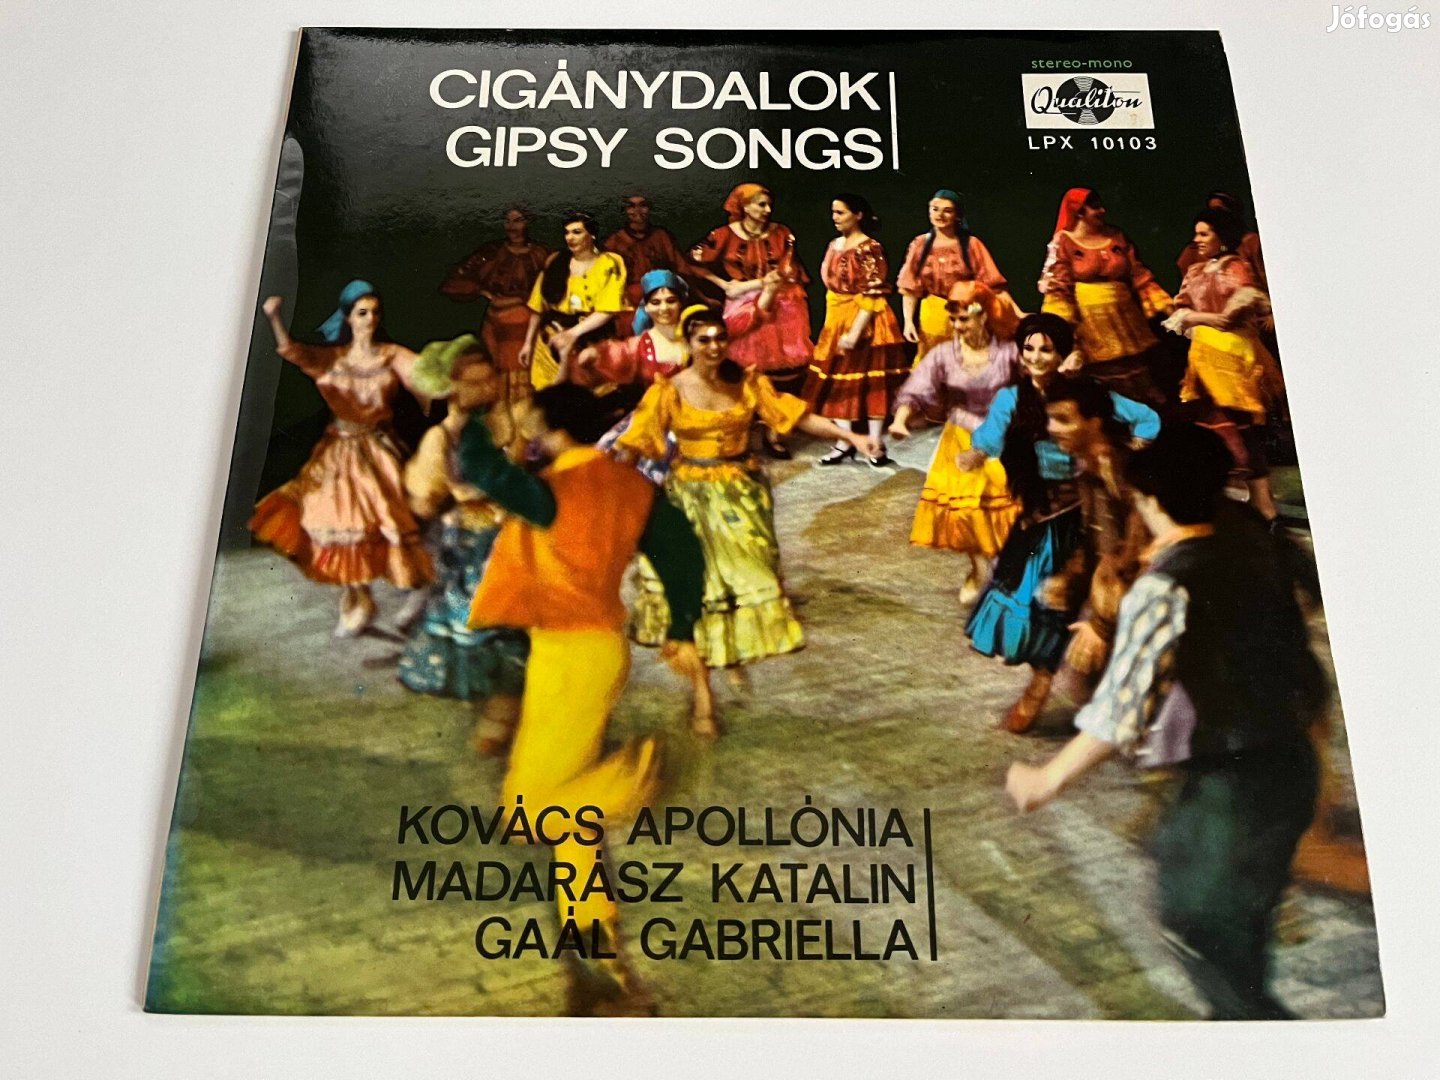 Kovács Apollónia: Cigánydalok bakelit, vinyl, LP